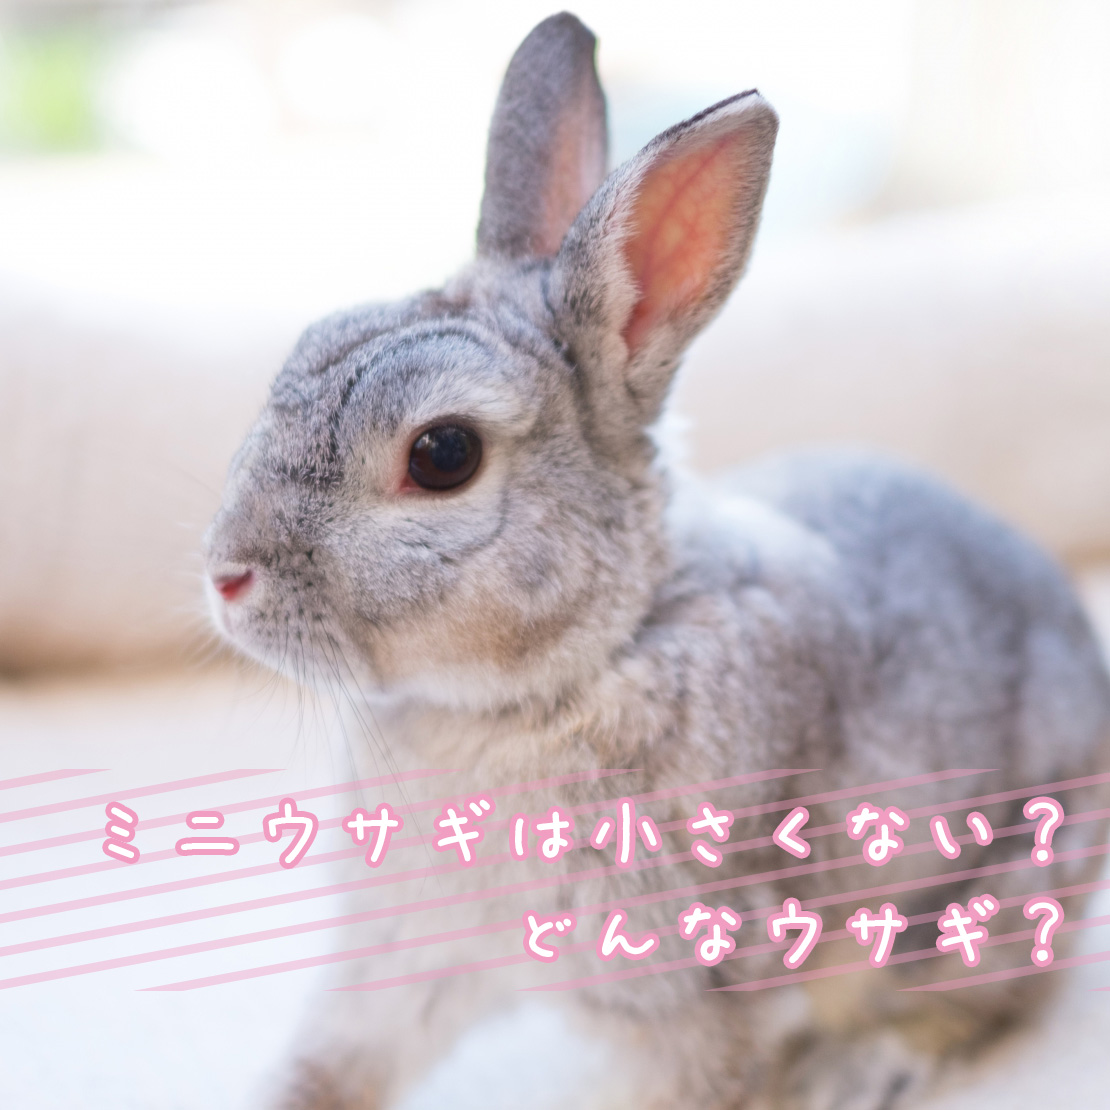 ミニウサギといううさぎの品種はない？ミニウサギの魅力や特徴、飼い方について